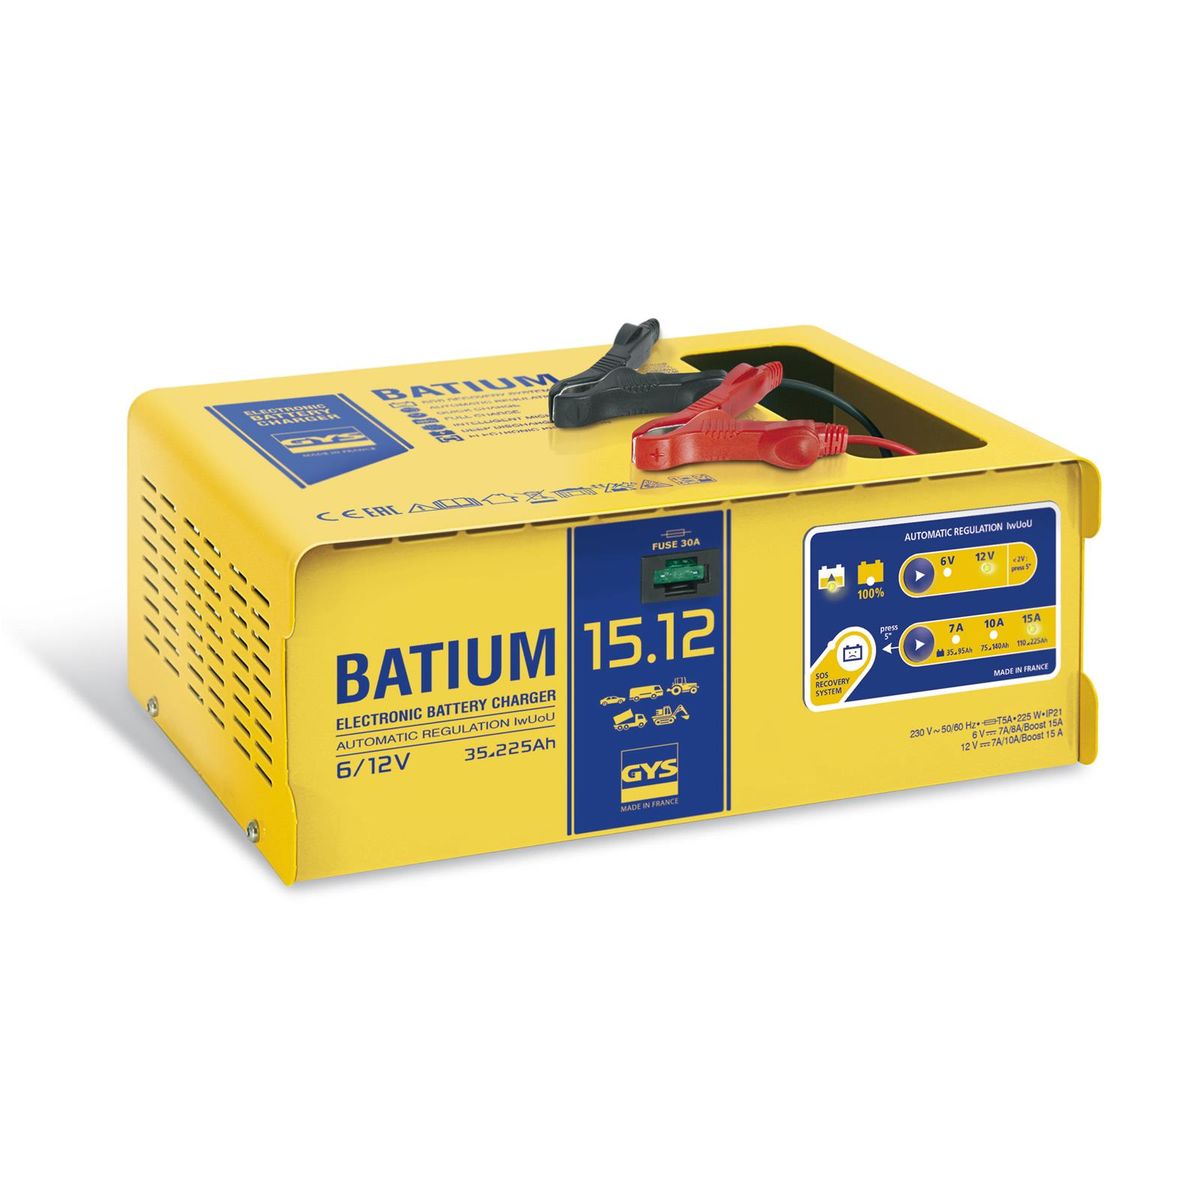 Chargeur de batterie automatique Pro 6/12V 35-225Ah - GYS BATIUM